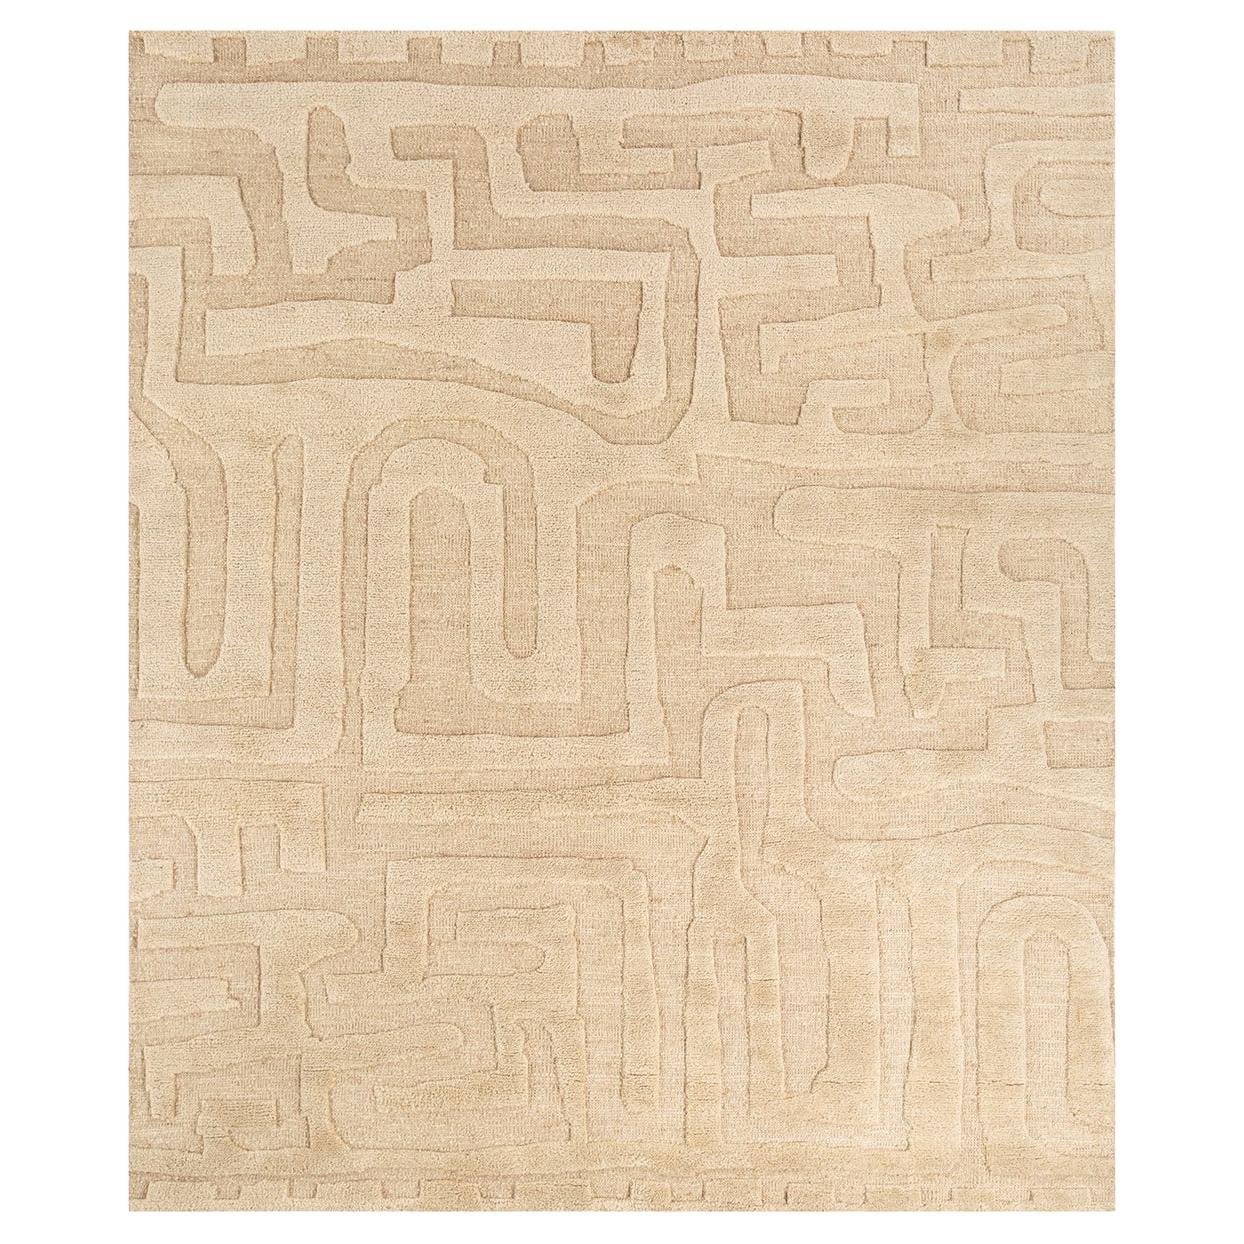 Maze-Teppich von Rural Weavers, geknüpft, Wolle, 240x300cm